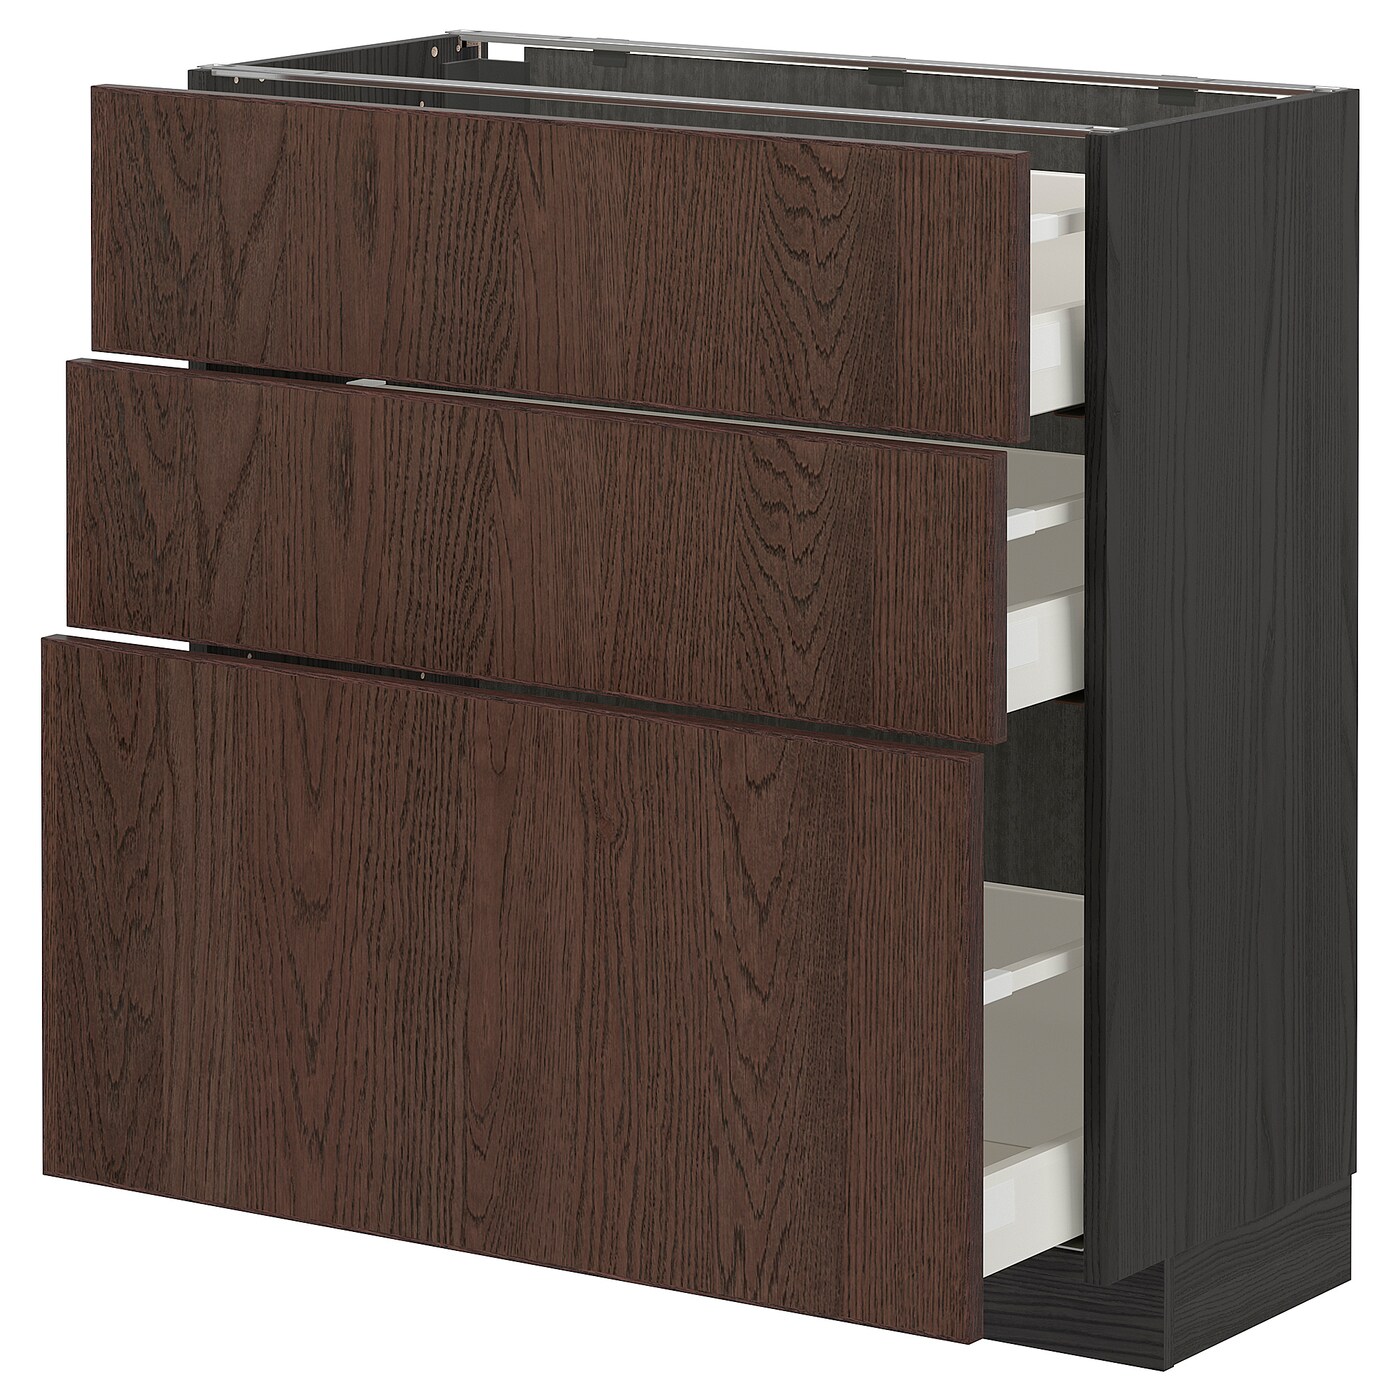 Напольный кухонный шкаф  - IKEA METOD MAXIMERA, 88x39x80см, черный/коричневый, МЕТОД МАКСИМЕРА ИКЕА